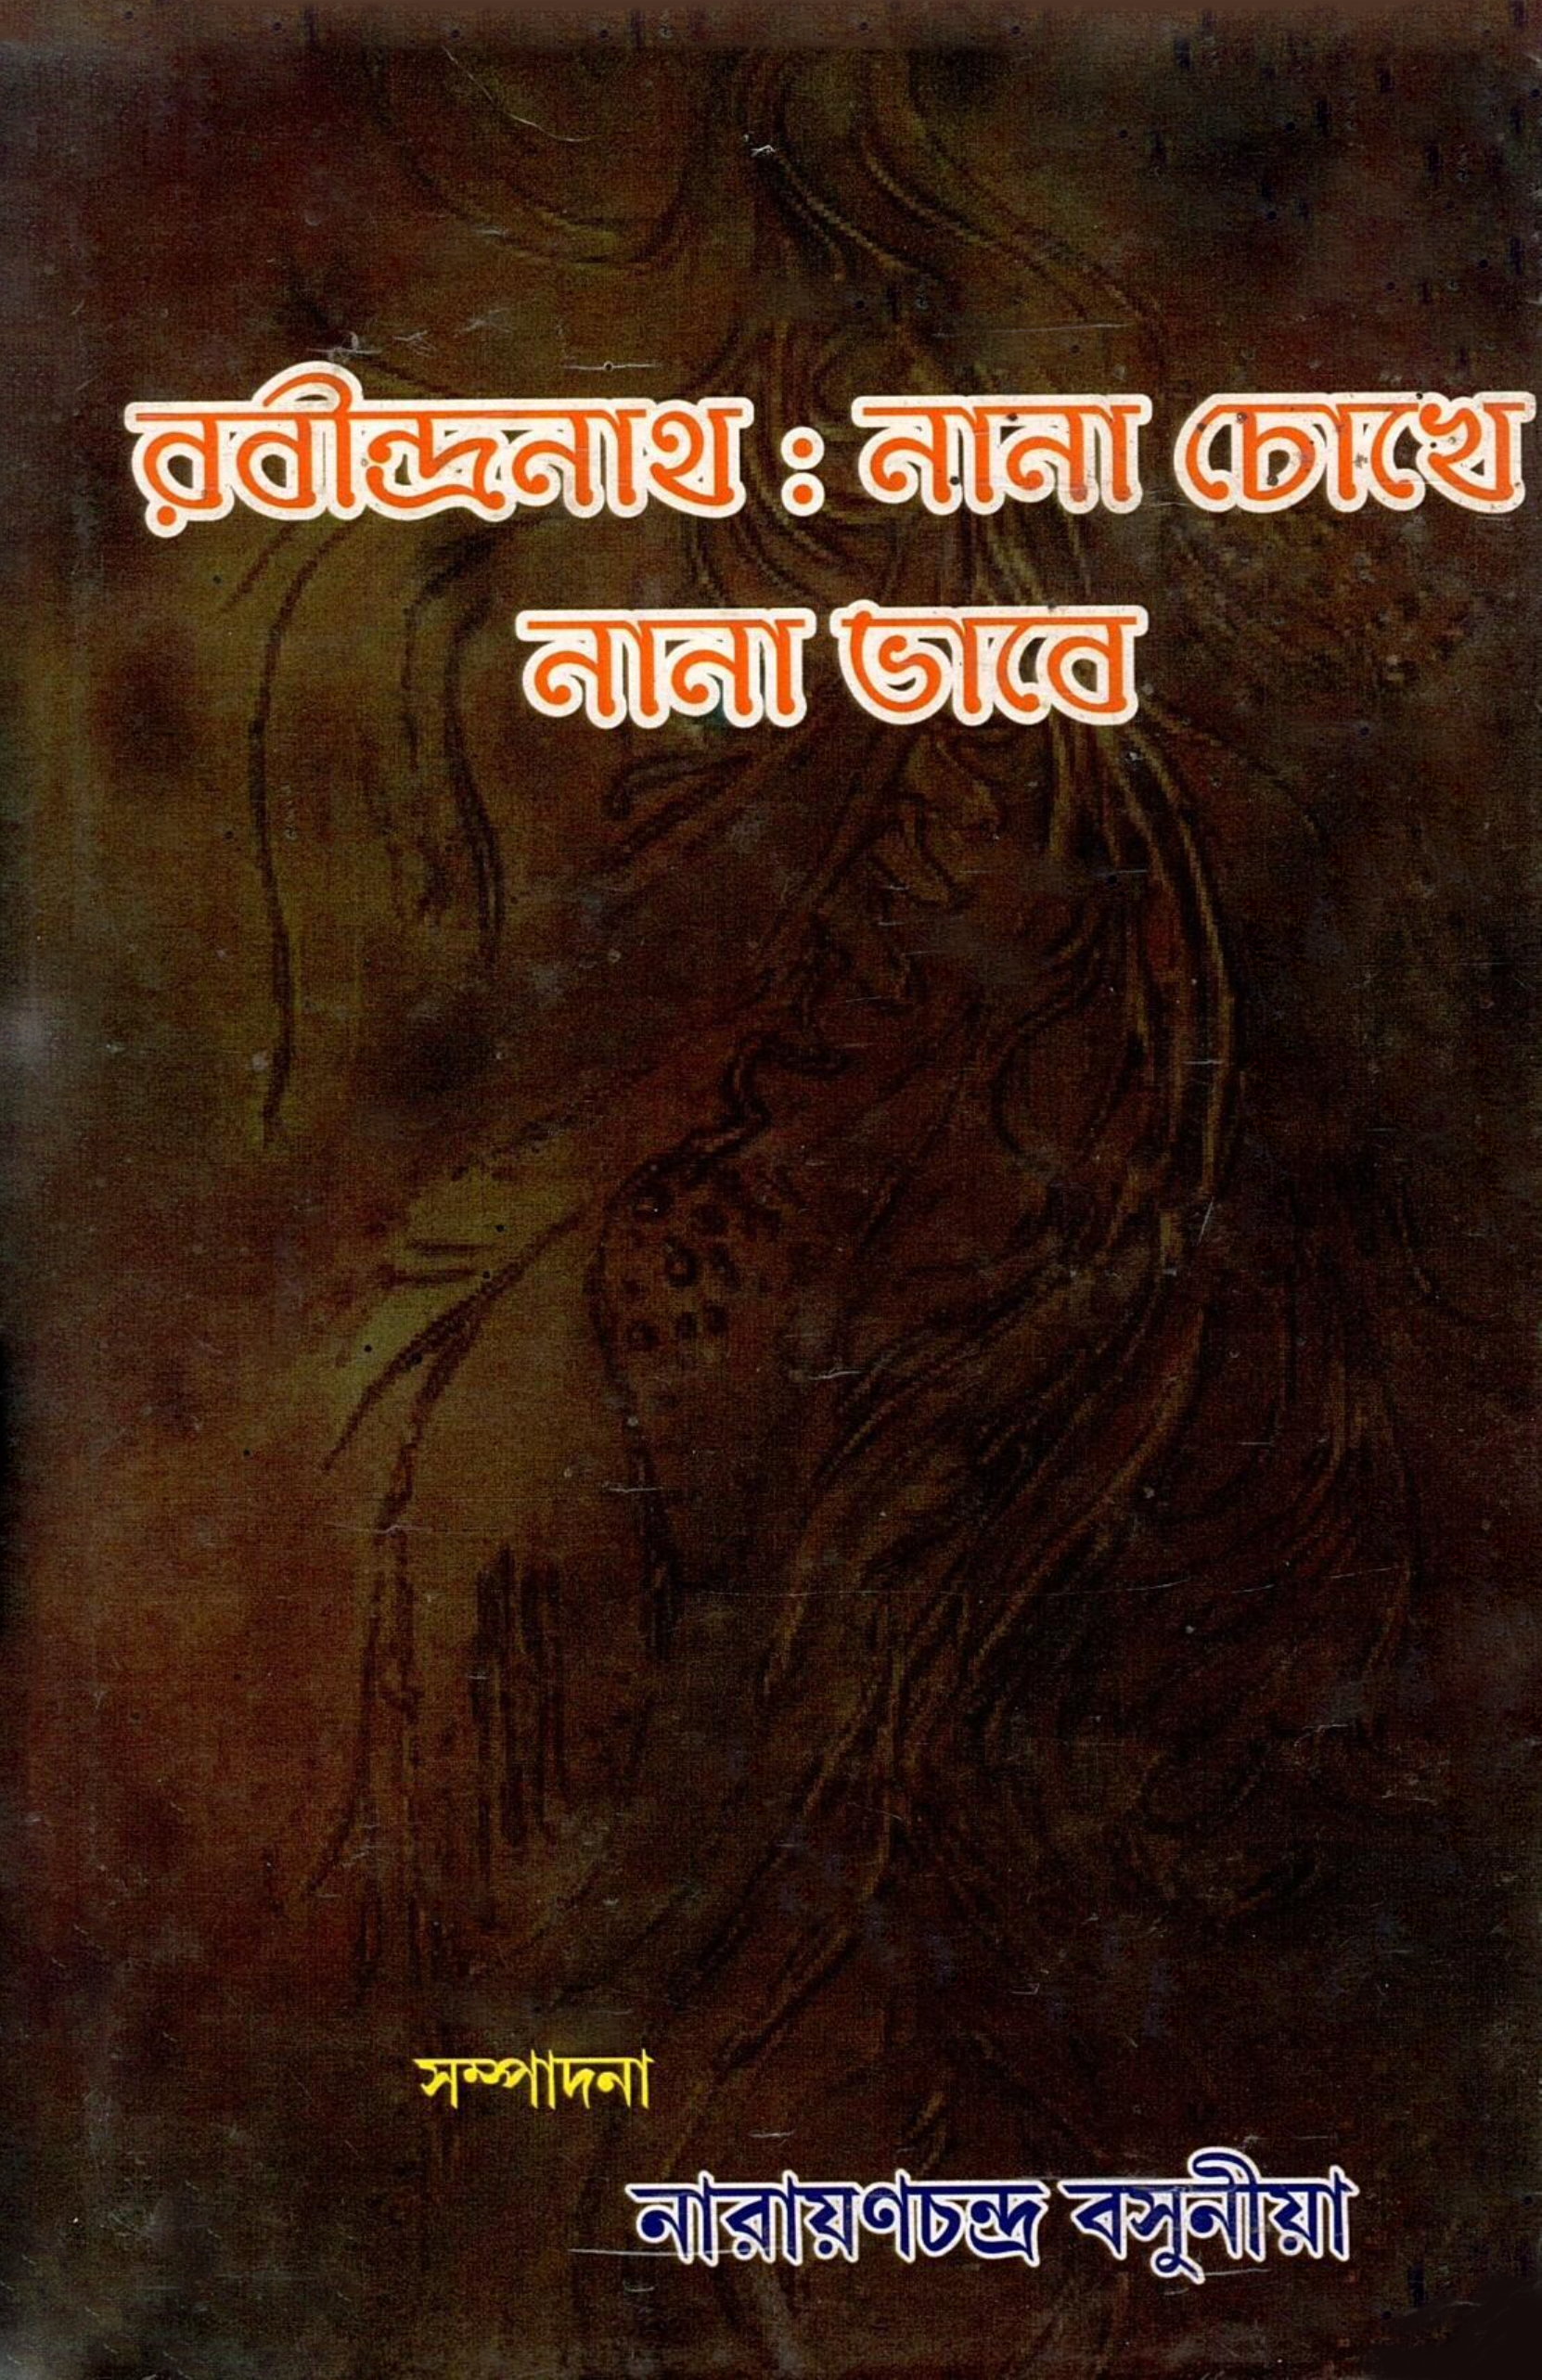 রবীন্দ্রনাথ : নানা চোখে নানা ভাবে | Rabindranath : Nana Chokhe, Nana Bhabe